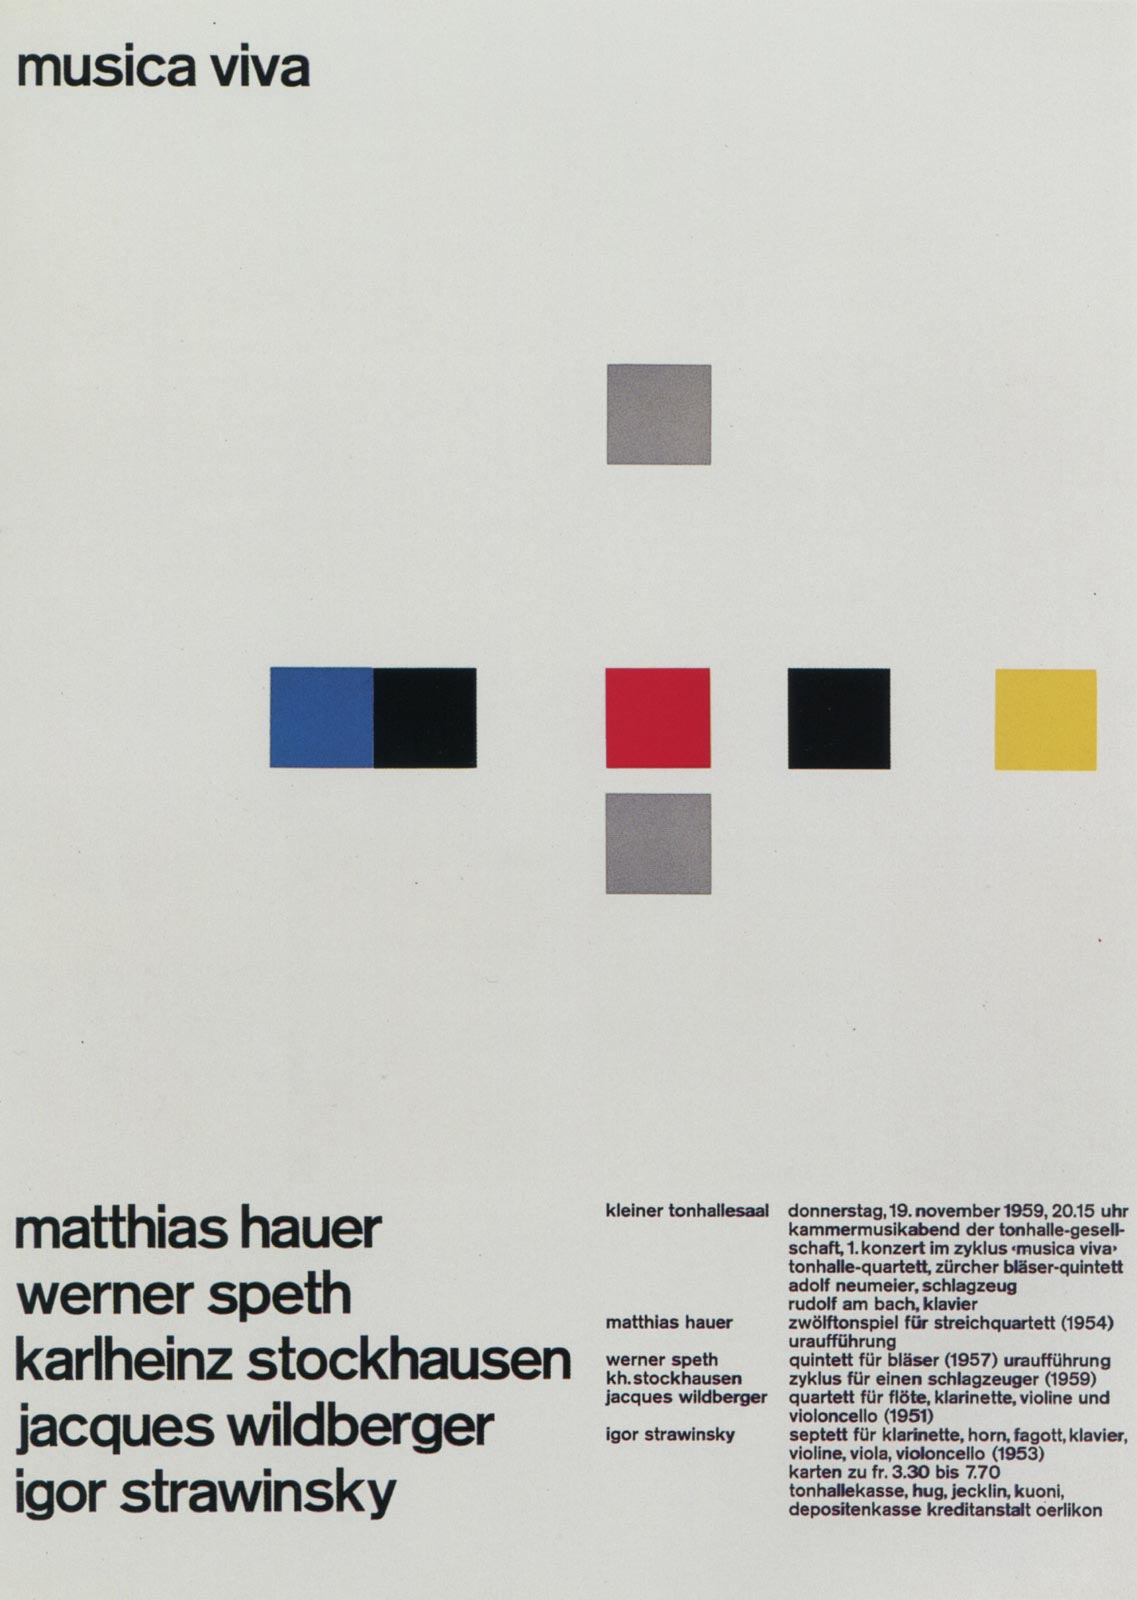 7. Zurich Tonhalle. musica viva. Concert poster, 1959